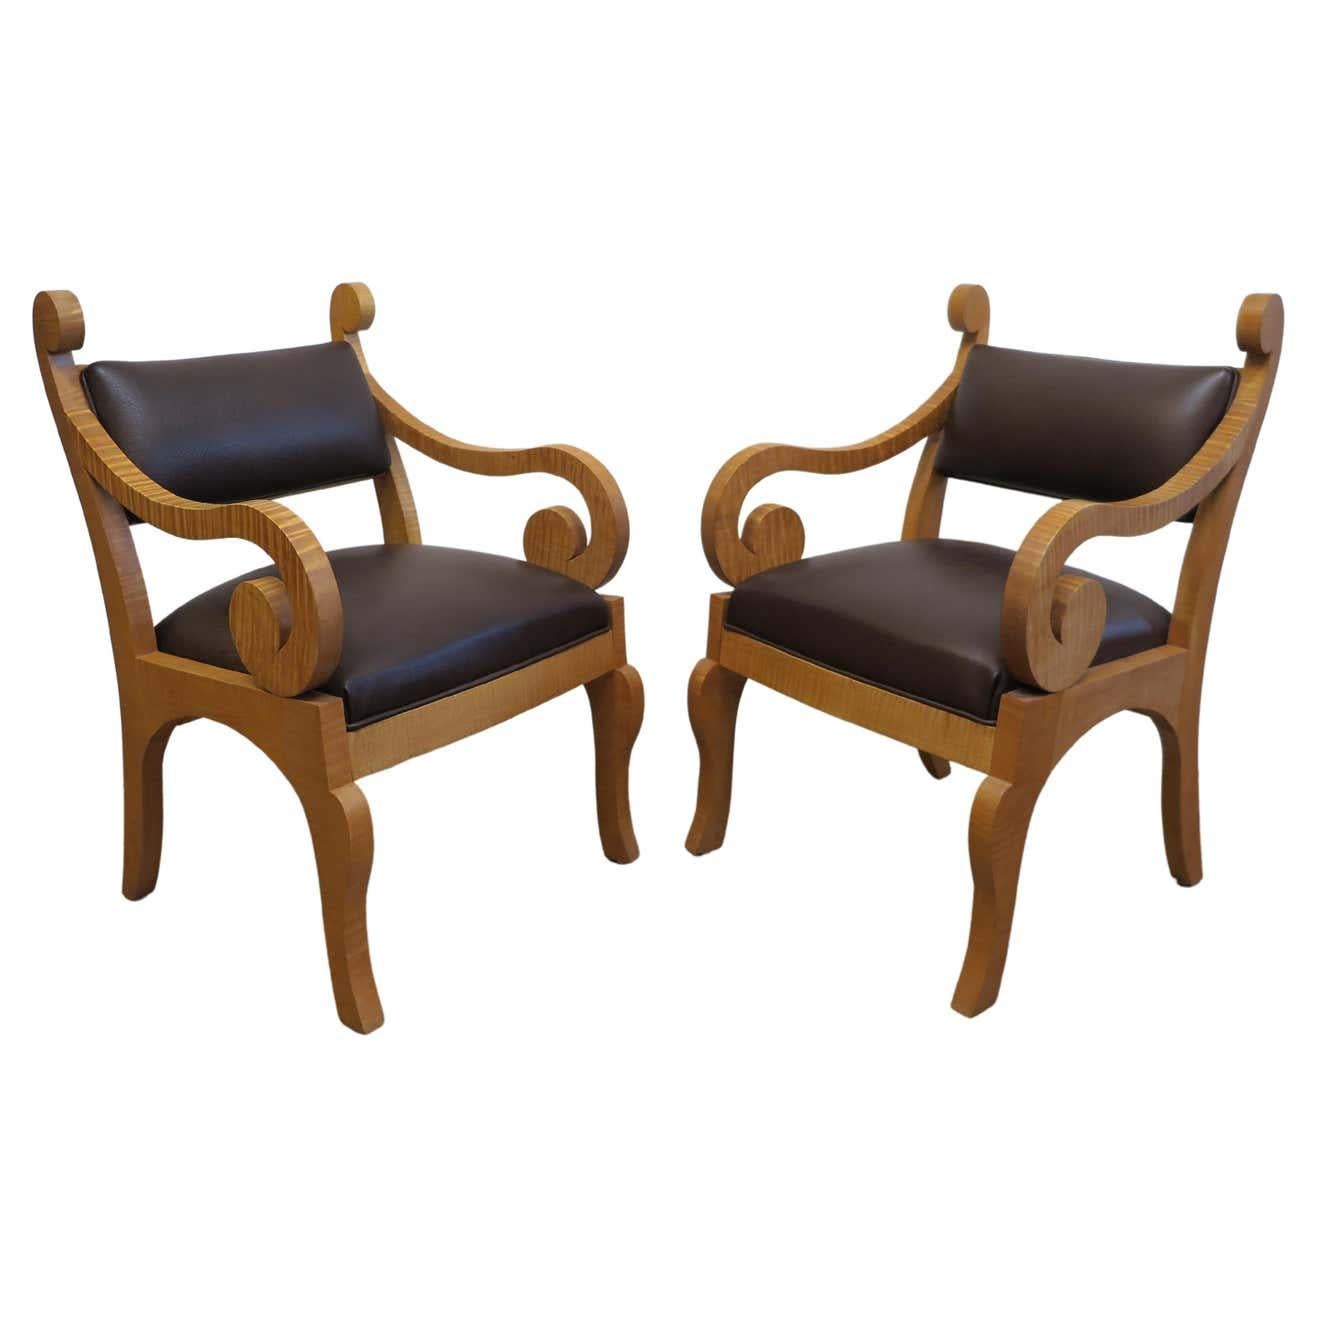 Chaises de salle à manger d'inspiration Biedermeier faites sur mesure en érable tigré. Magnifiquement fabriqué en bois d'érable tigré massif avec une touche de style Biedermeier fantaisiste mettant en valeur les magnifiques qualités du bois. Le cuir